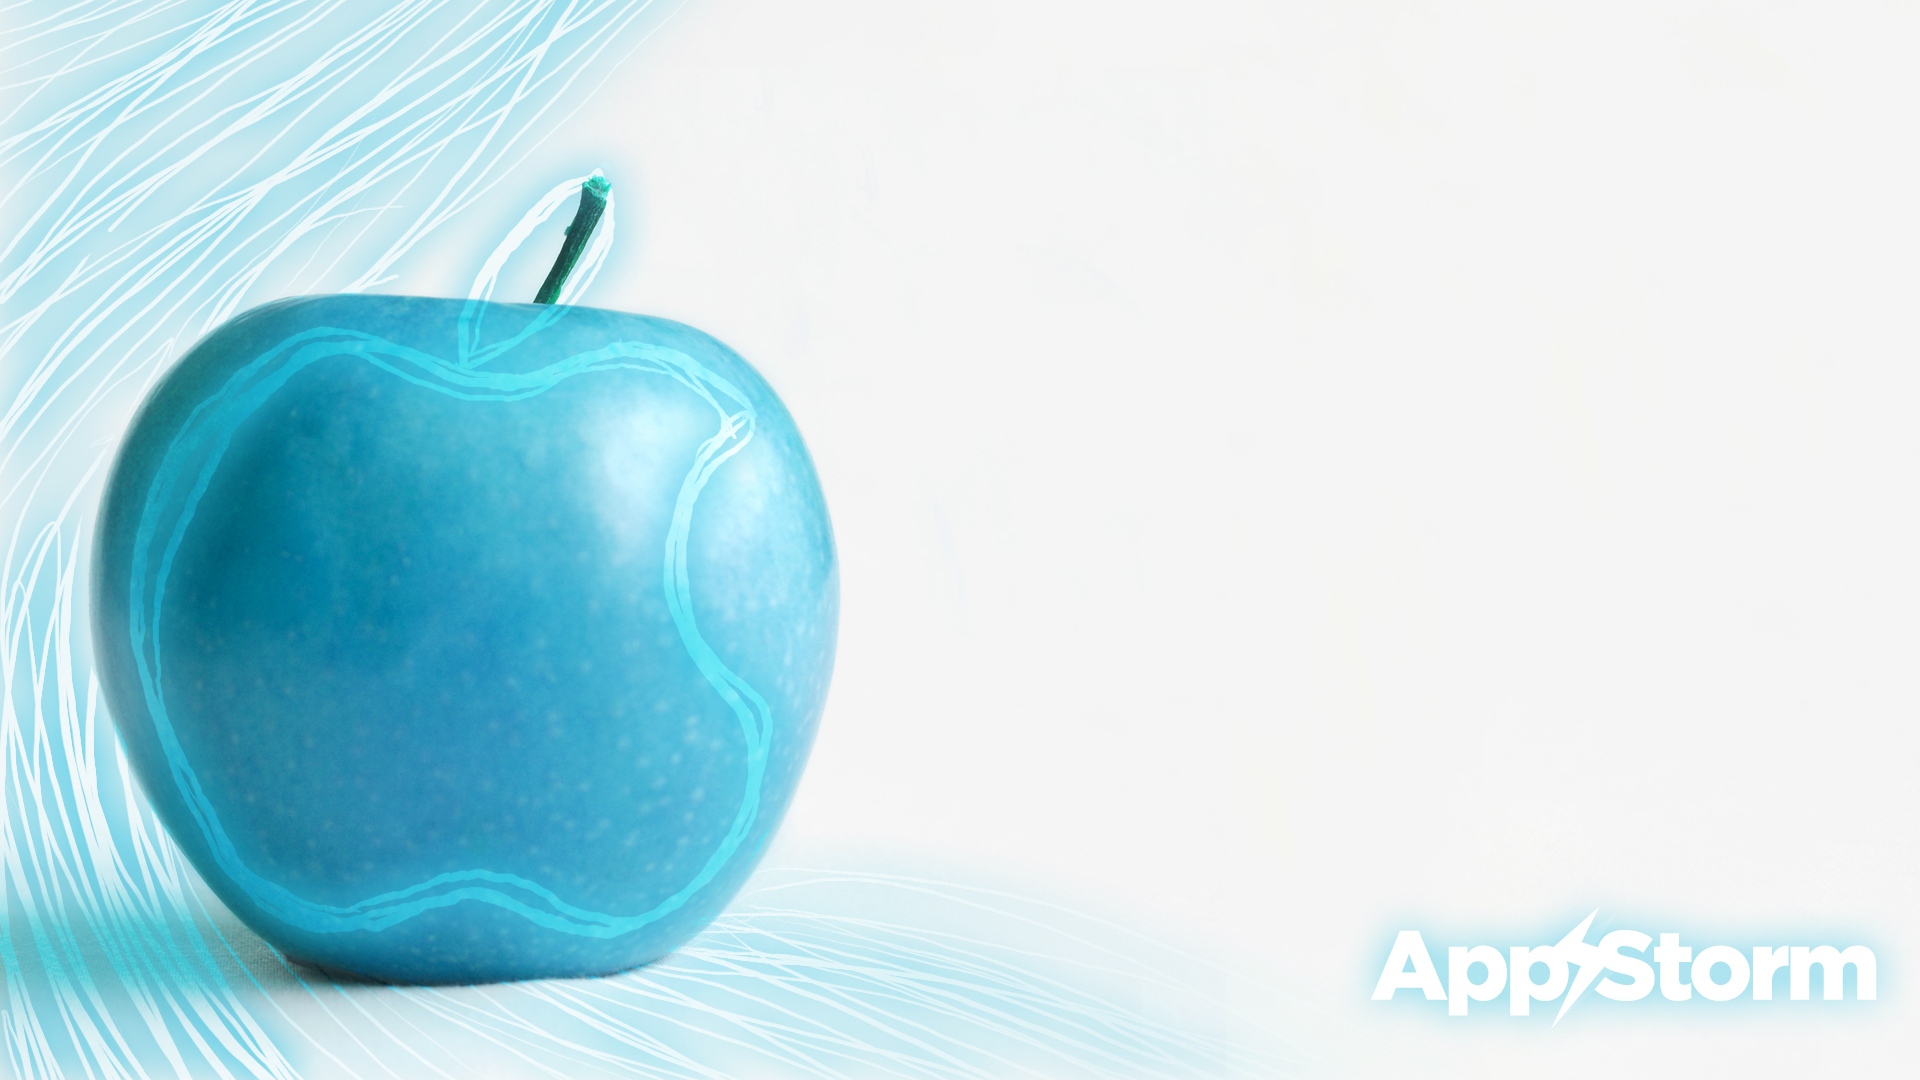 دانلود والپیپر منحصربفرد پسرانه طرح سیب آبی زیبا